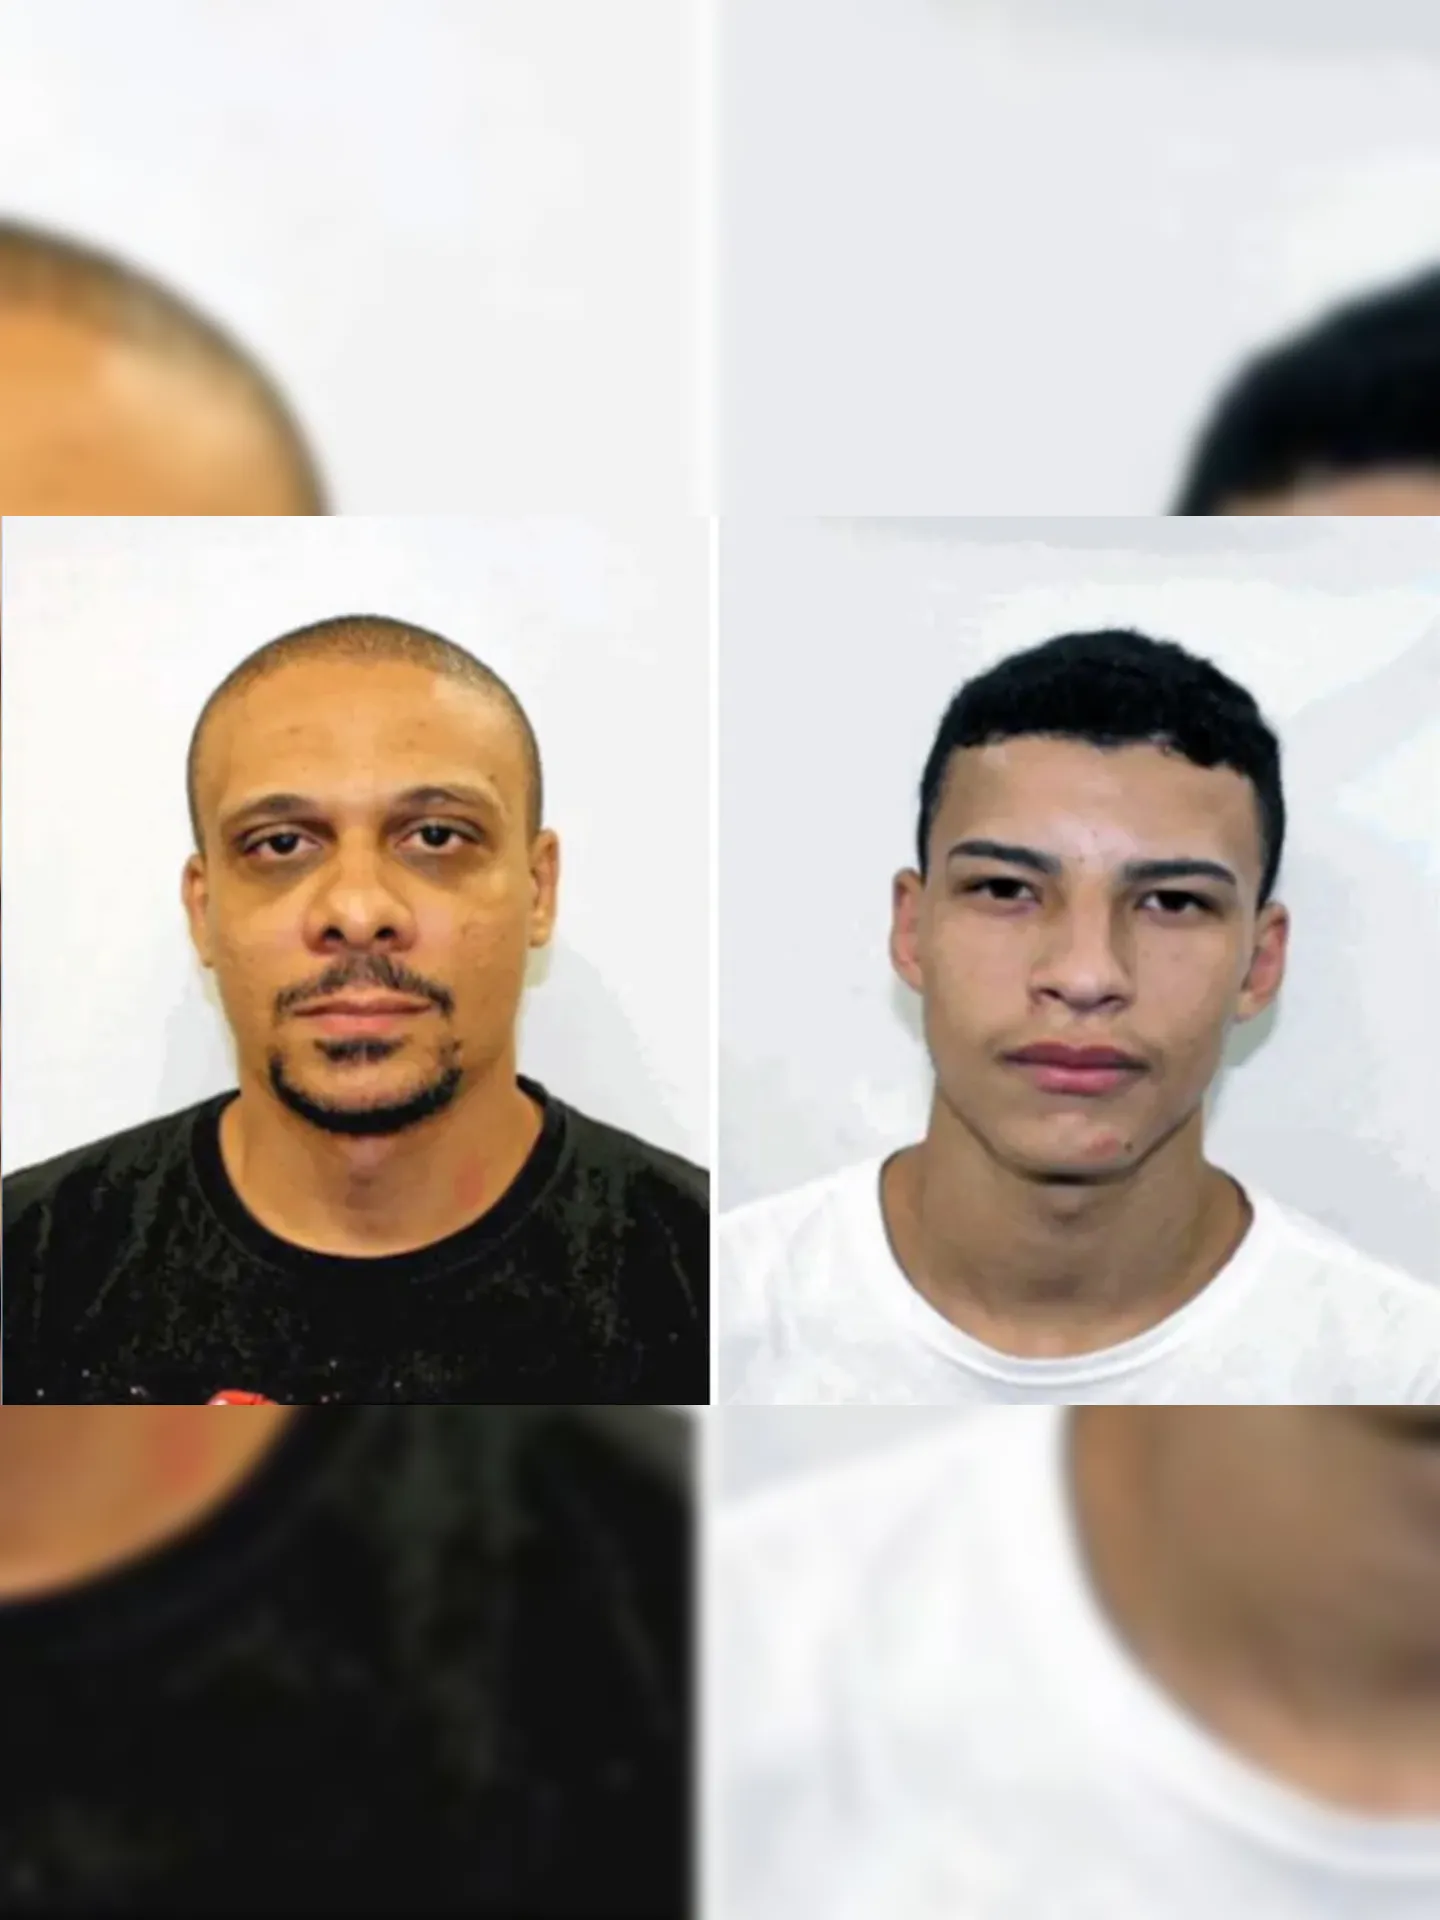 Philip Motta Pereira, o Lesk (E), e Ryan Nunes de Almeida, o Ryan (D), encontrados mortos e suspeitos da execução de médicos